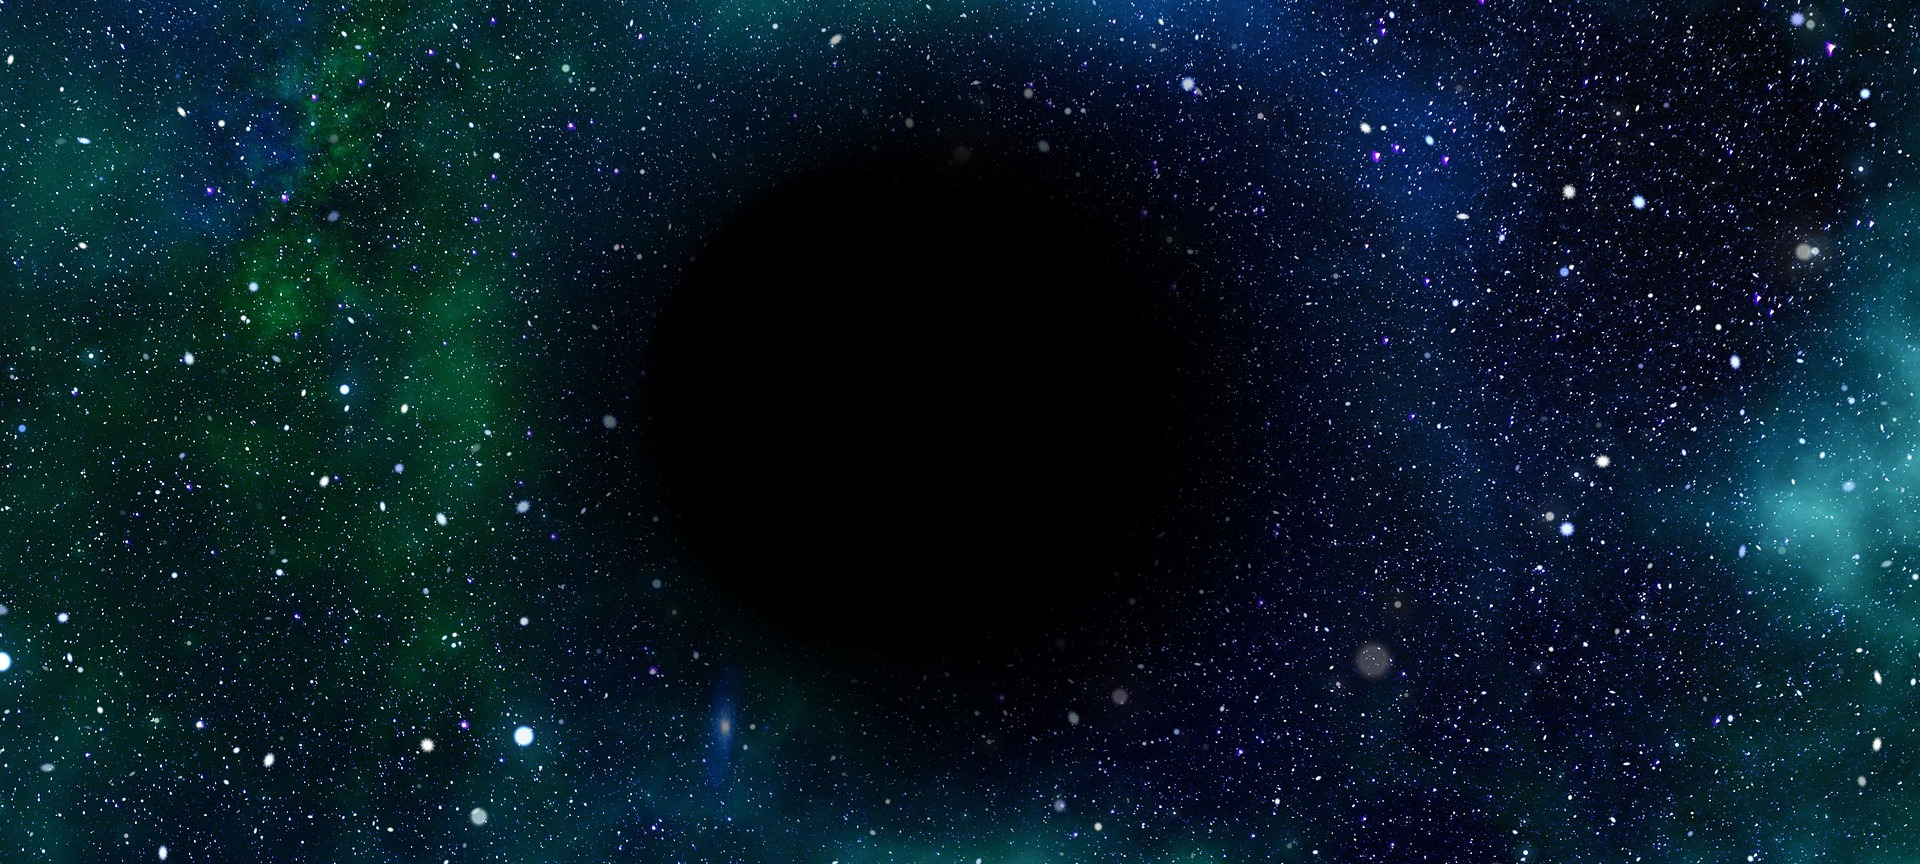 universe with blackhole